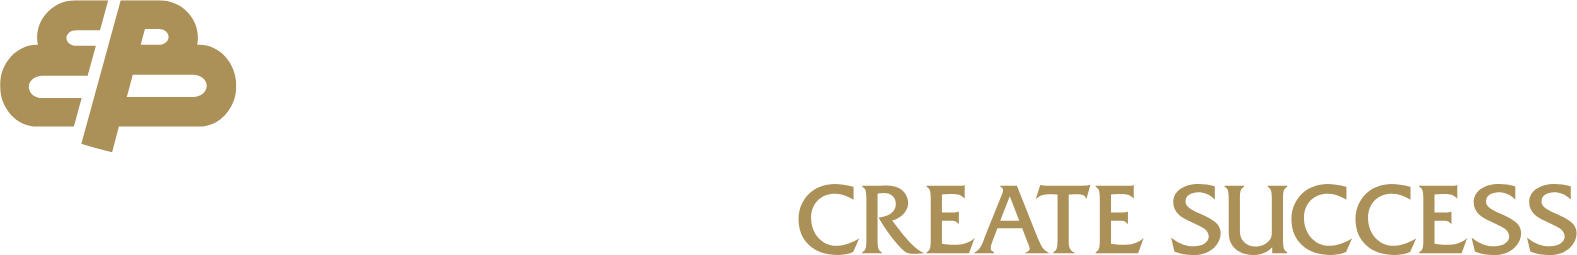 Enterprise Bancorp logo large for dark backgrounds (transparent PNG)